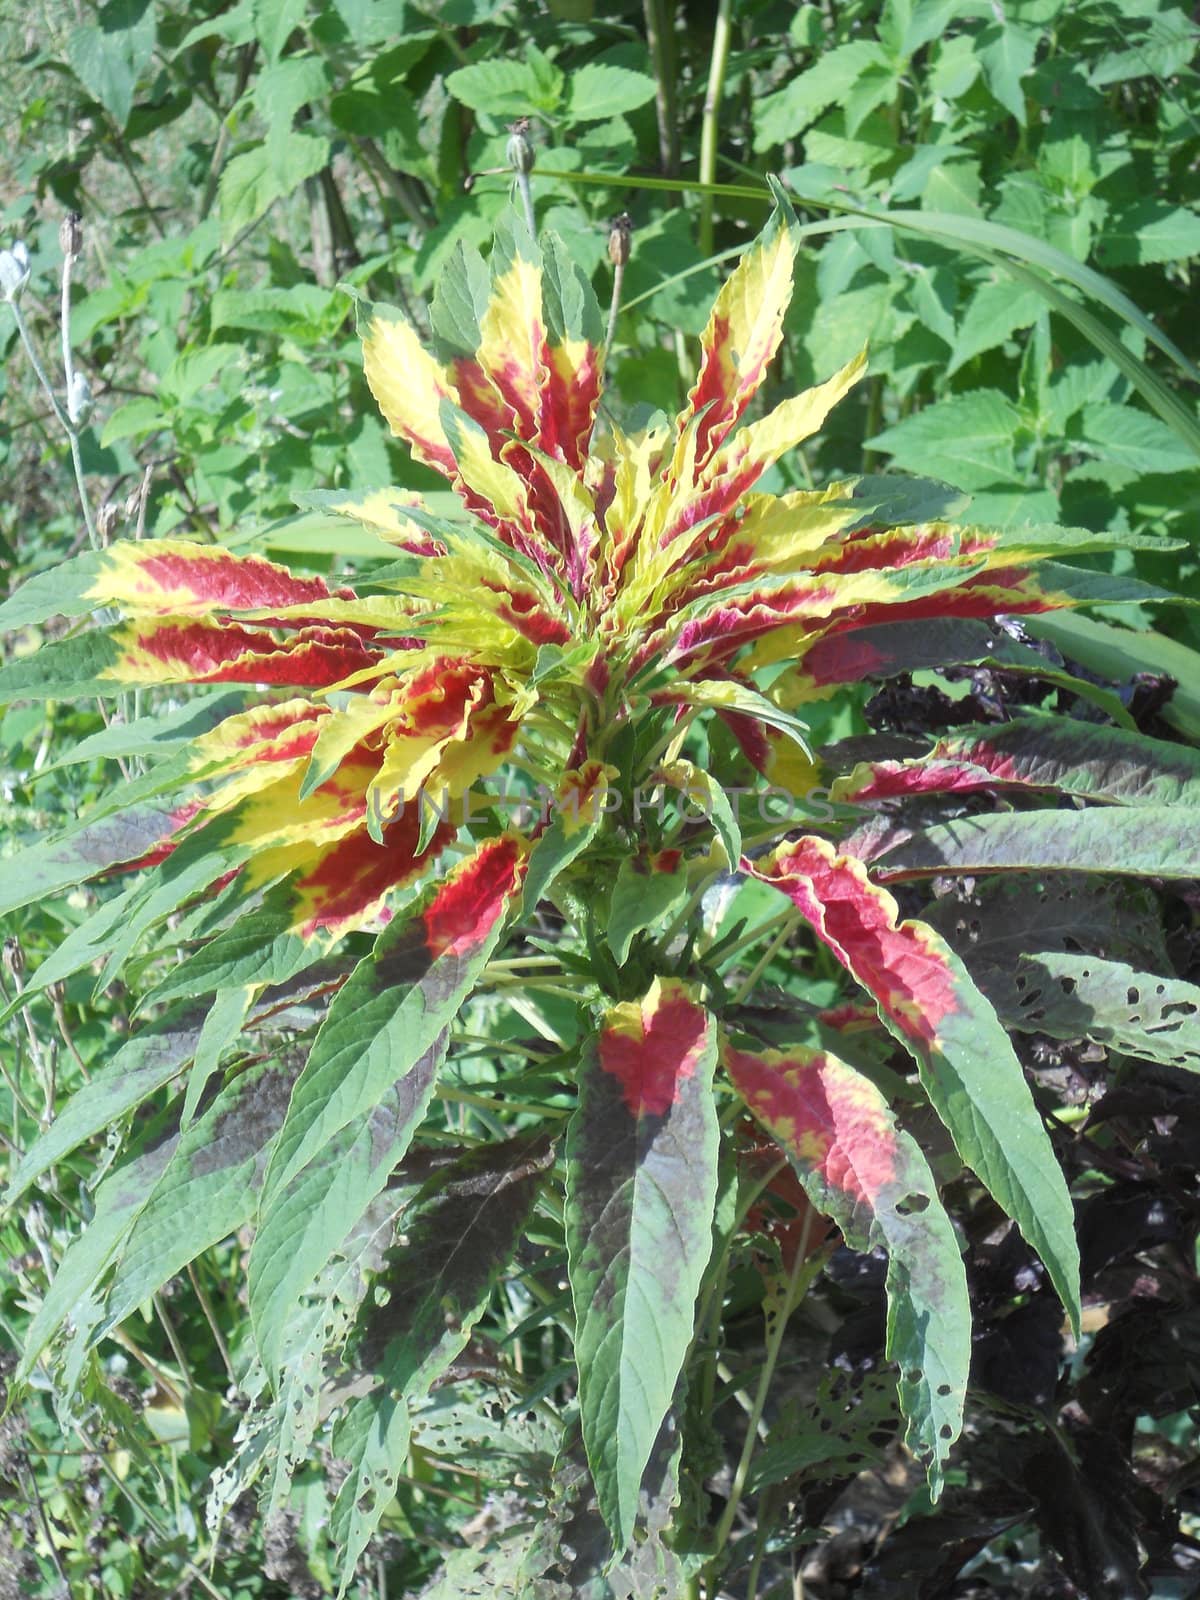 Tricolor Amaranthus (Joseph's Coat) by xplorer1959@hotmail.com